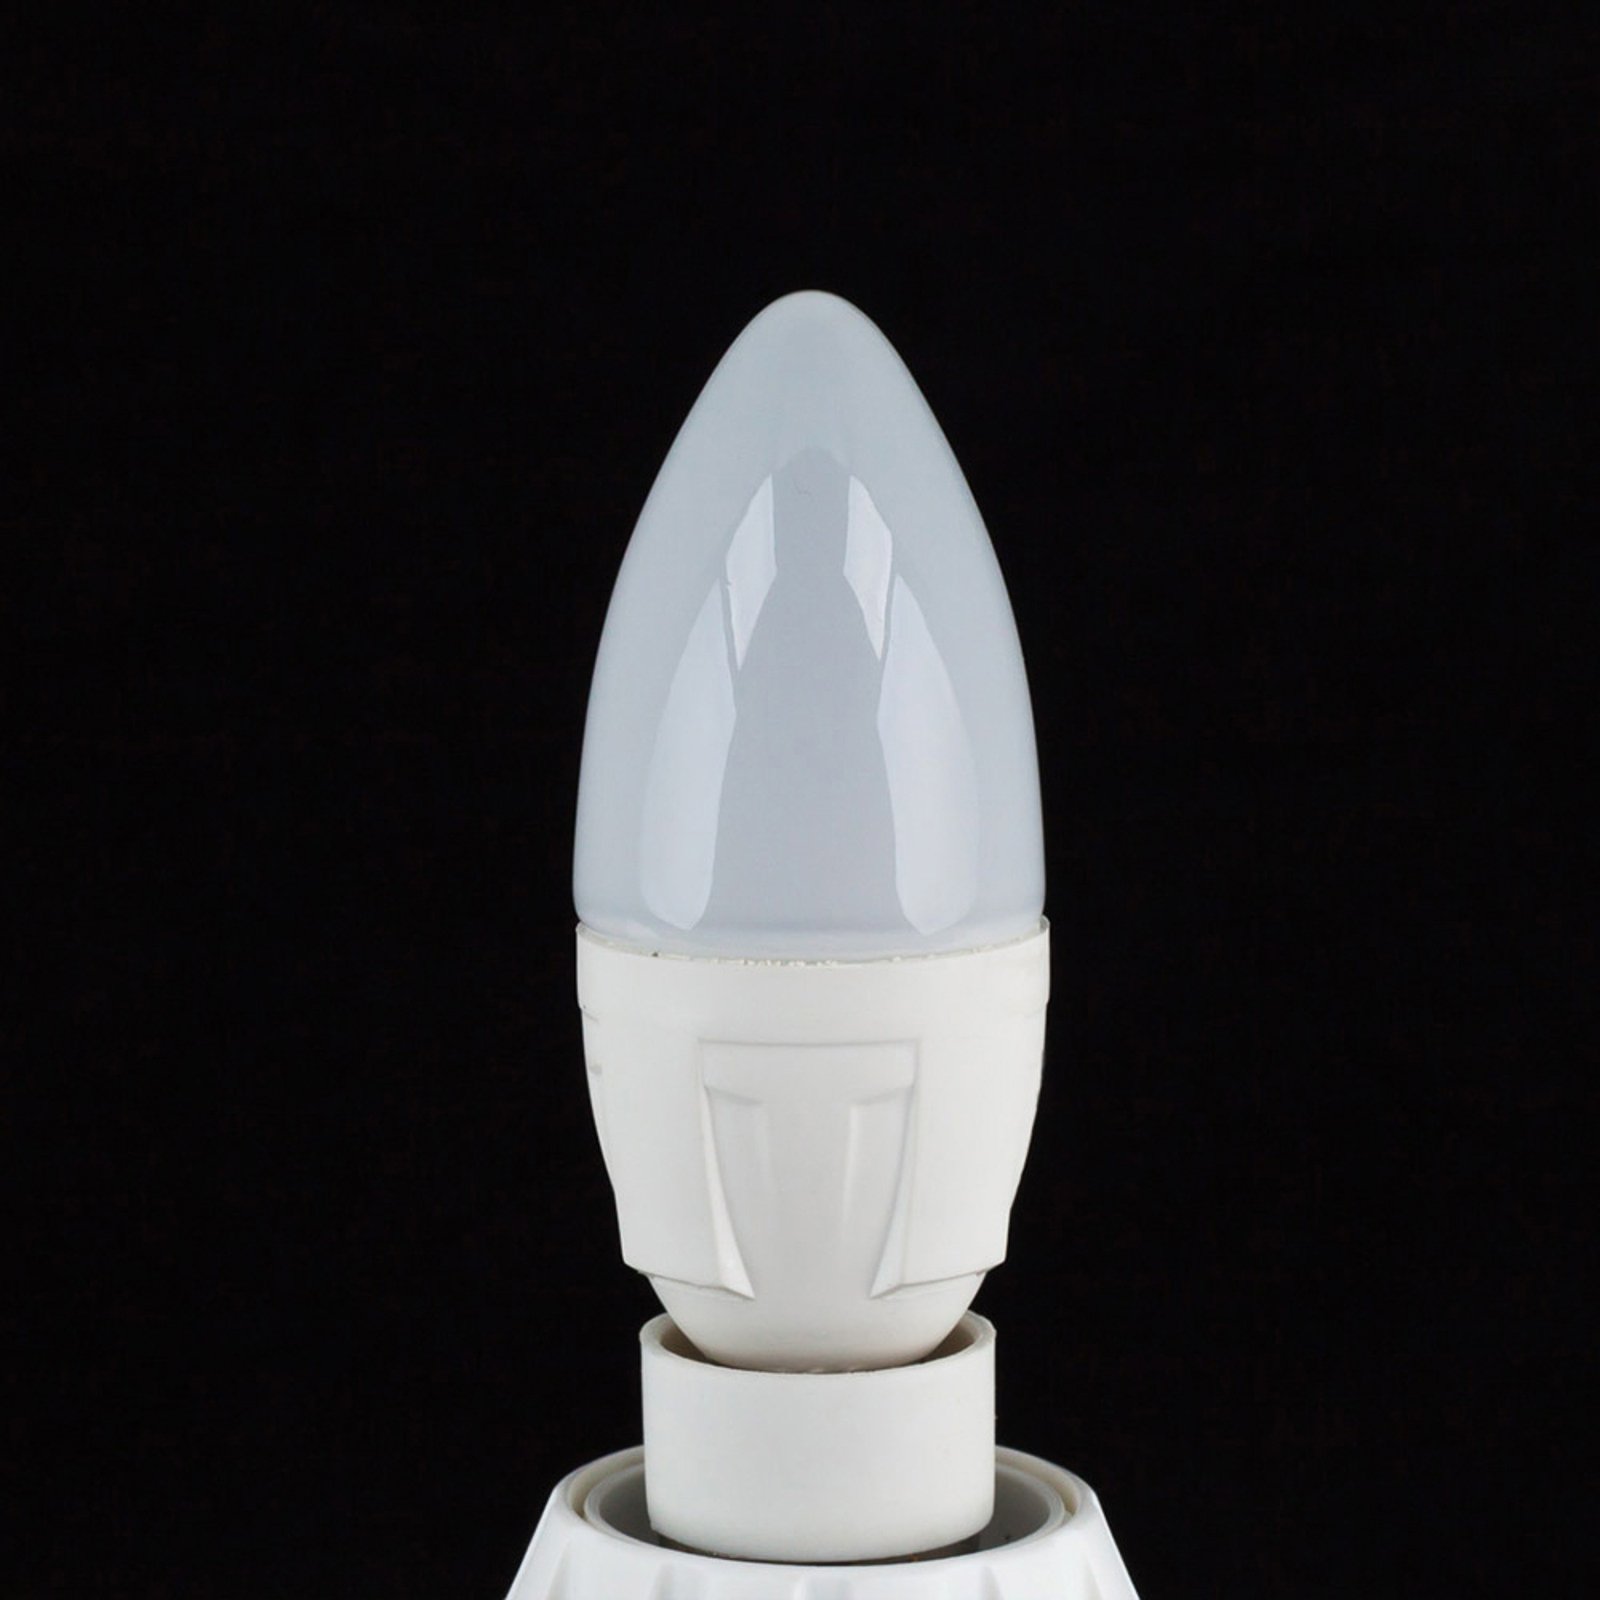 Candle LED bulb E14 4.9 W 830 470 lumens, 3-pack